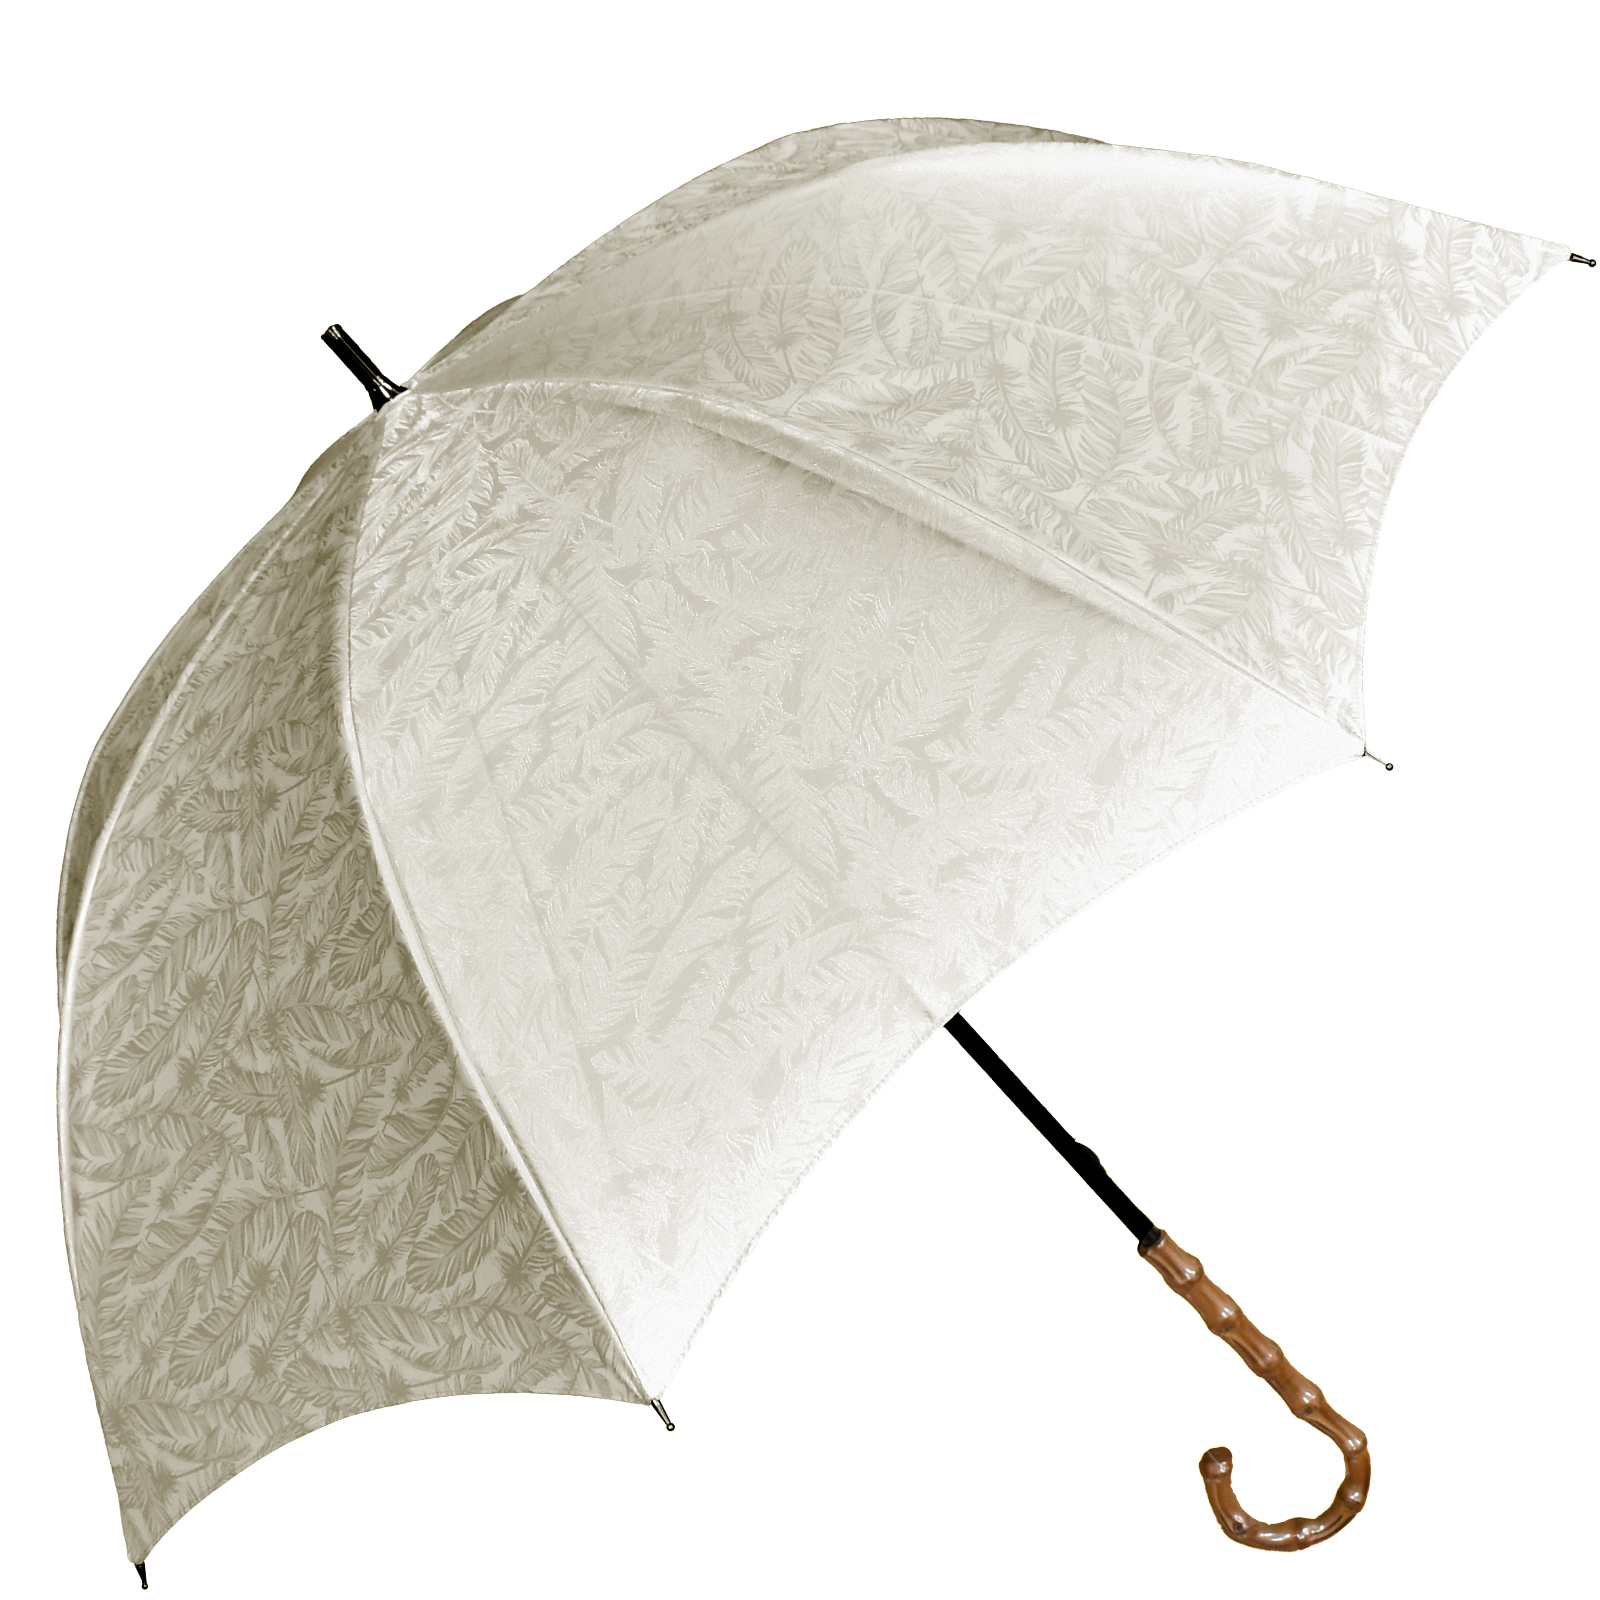 日傘 完全遮光 長傘 uv 晴雨兼用 1級遮光 遮熱 涼しい おしゃれ 完全遮光 軽量 プレーン フ...